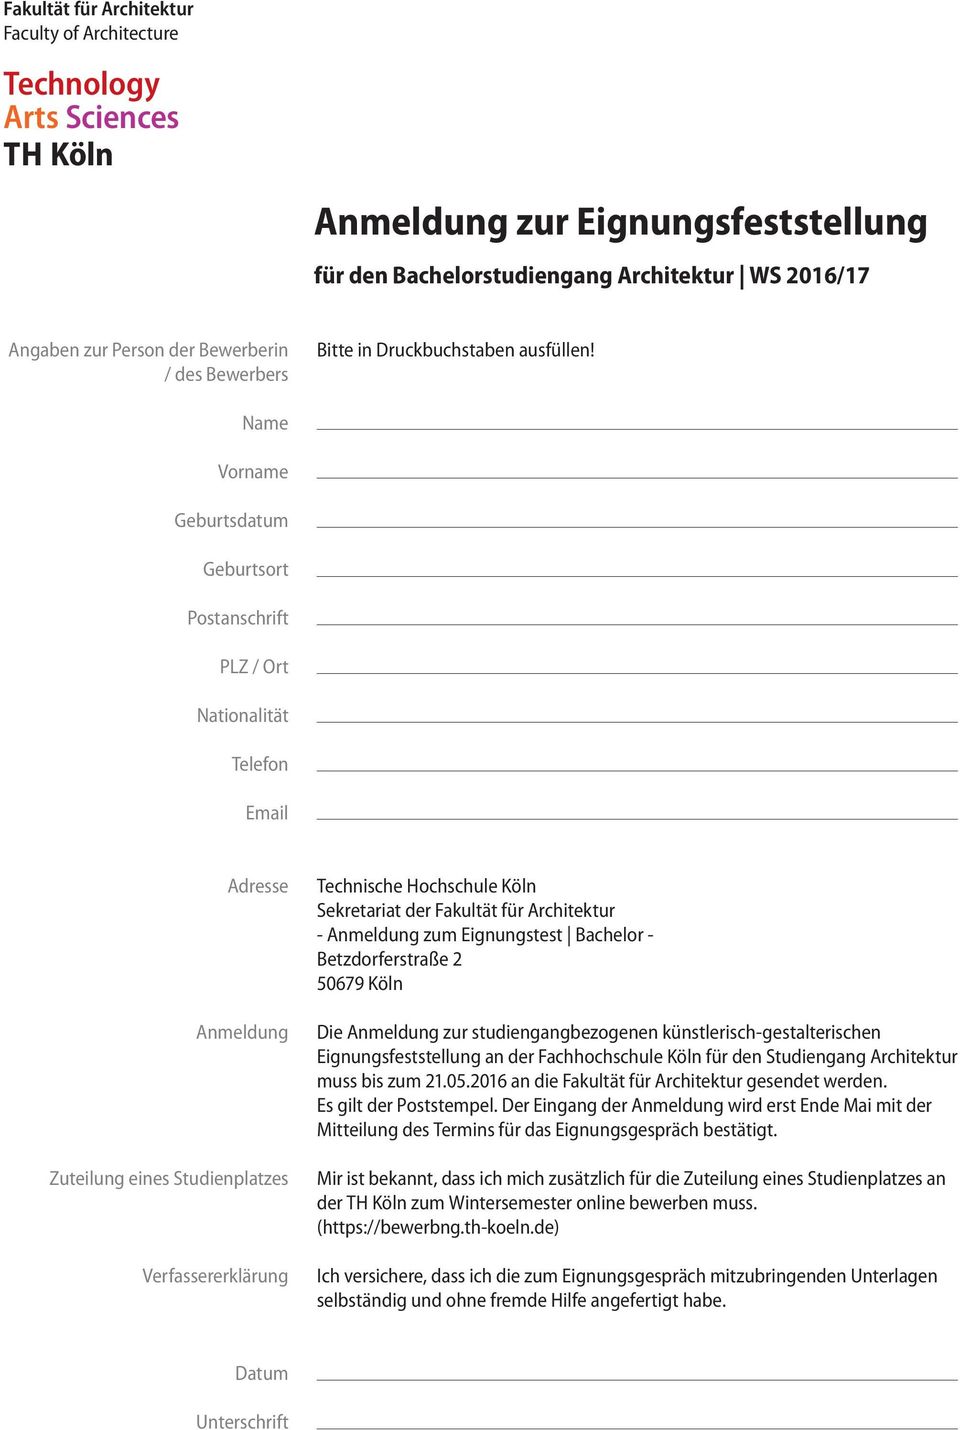 Fakultät für Architektur - Anmeldung zum Eignungstest Bachelor - Betzdorferstraße 2 50679 Köln Die Anmeldung zur studiengangbezogenen künstlerisch-gestalterischen Eignungsfeststellung an der